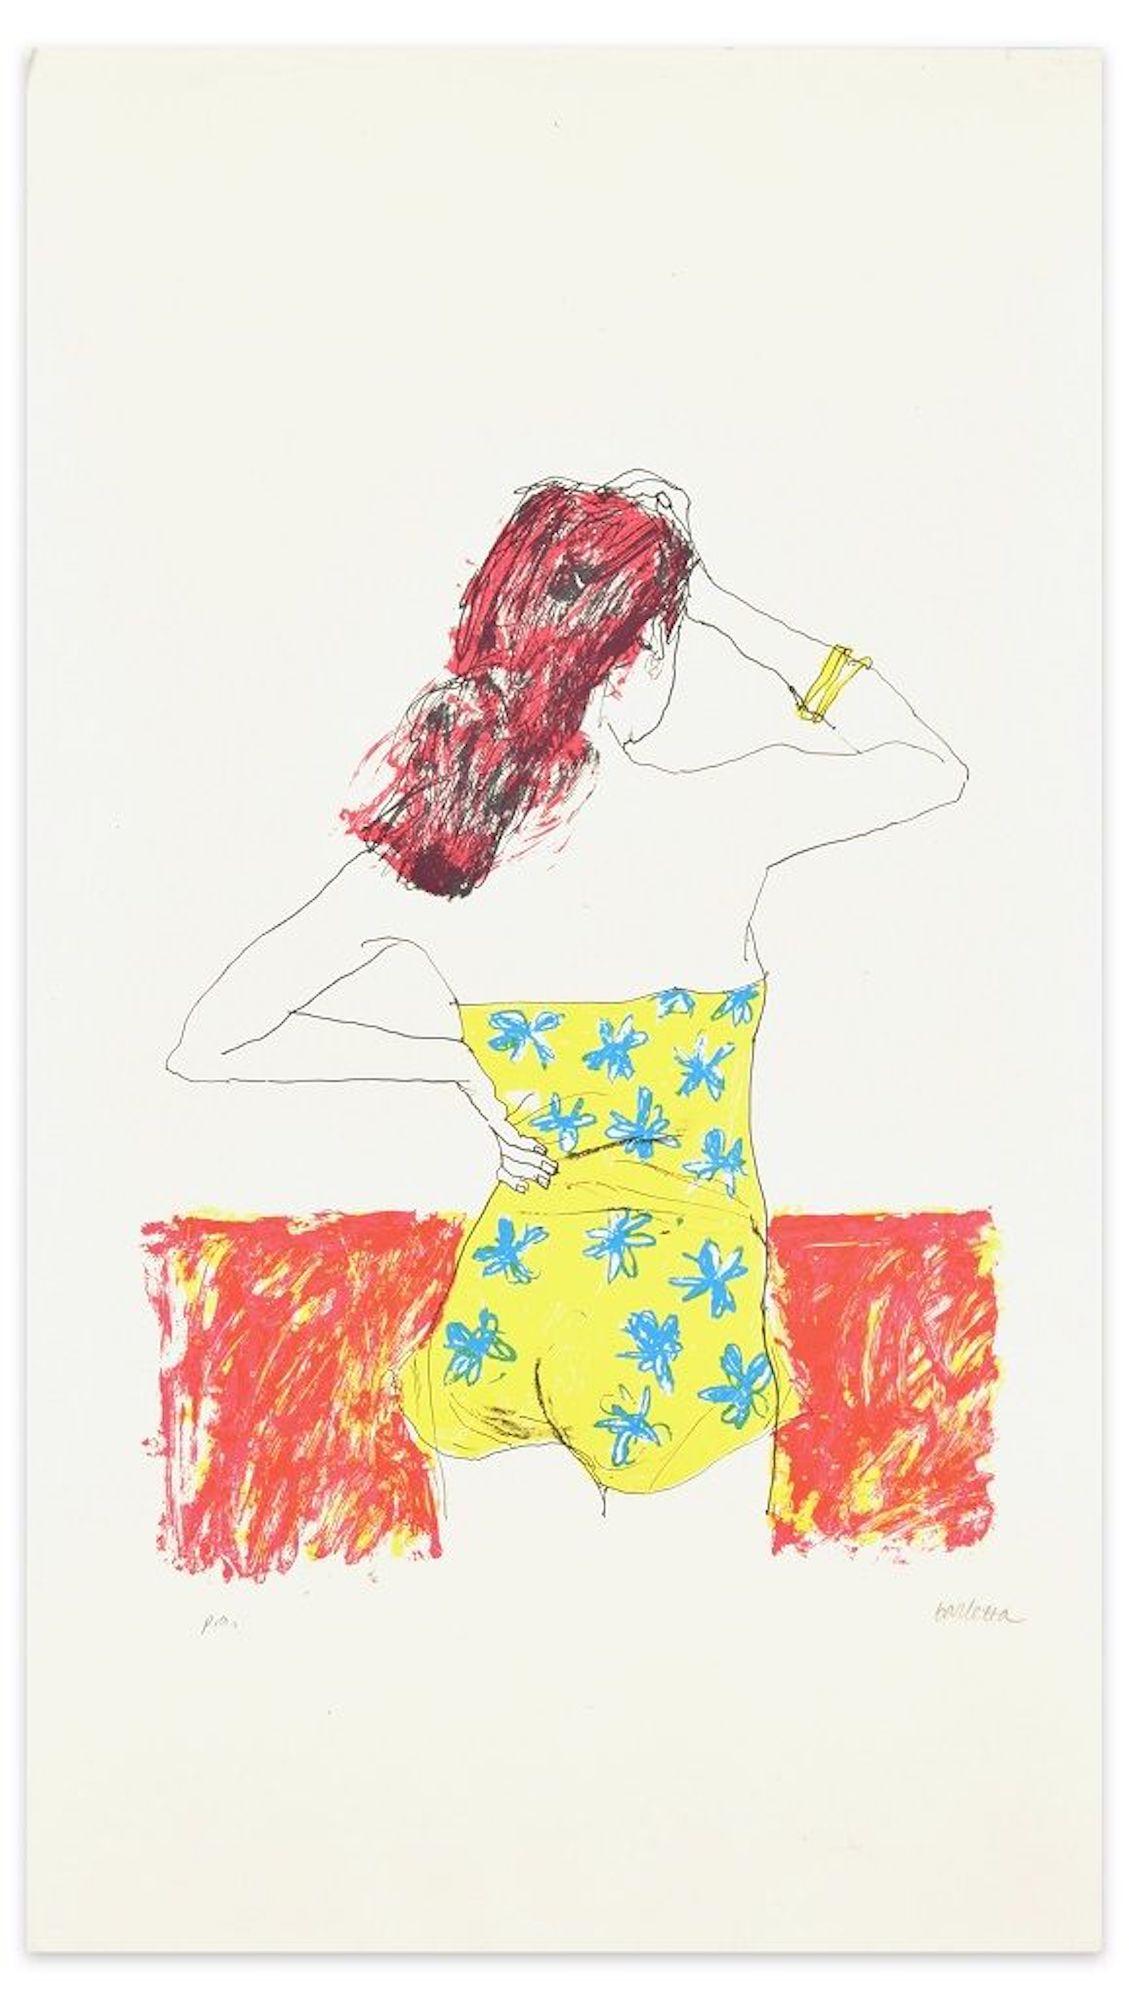 Nuda - Original Lithograph by Sergio Barletta - 1970s